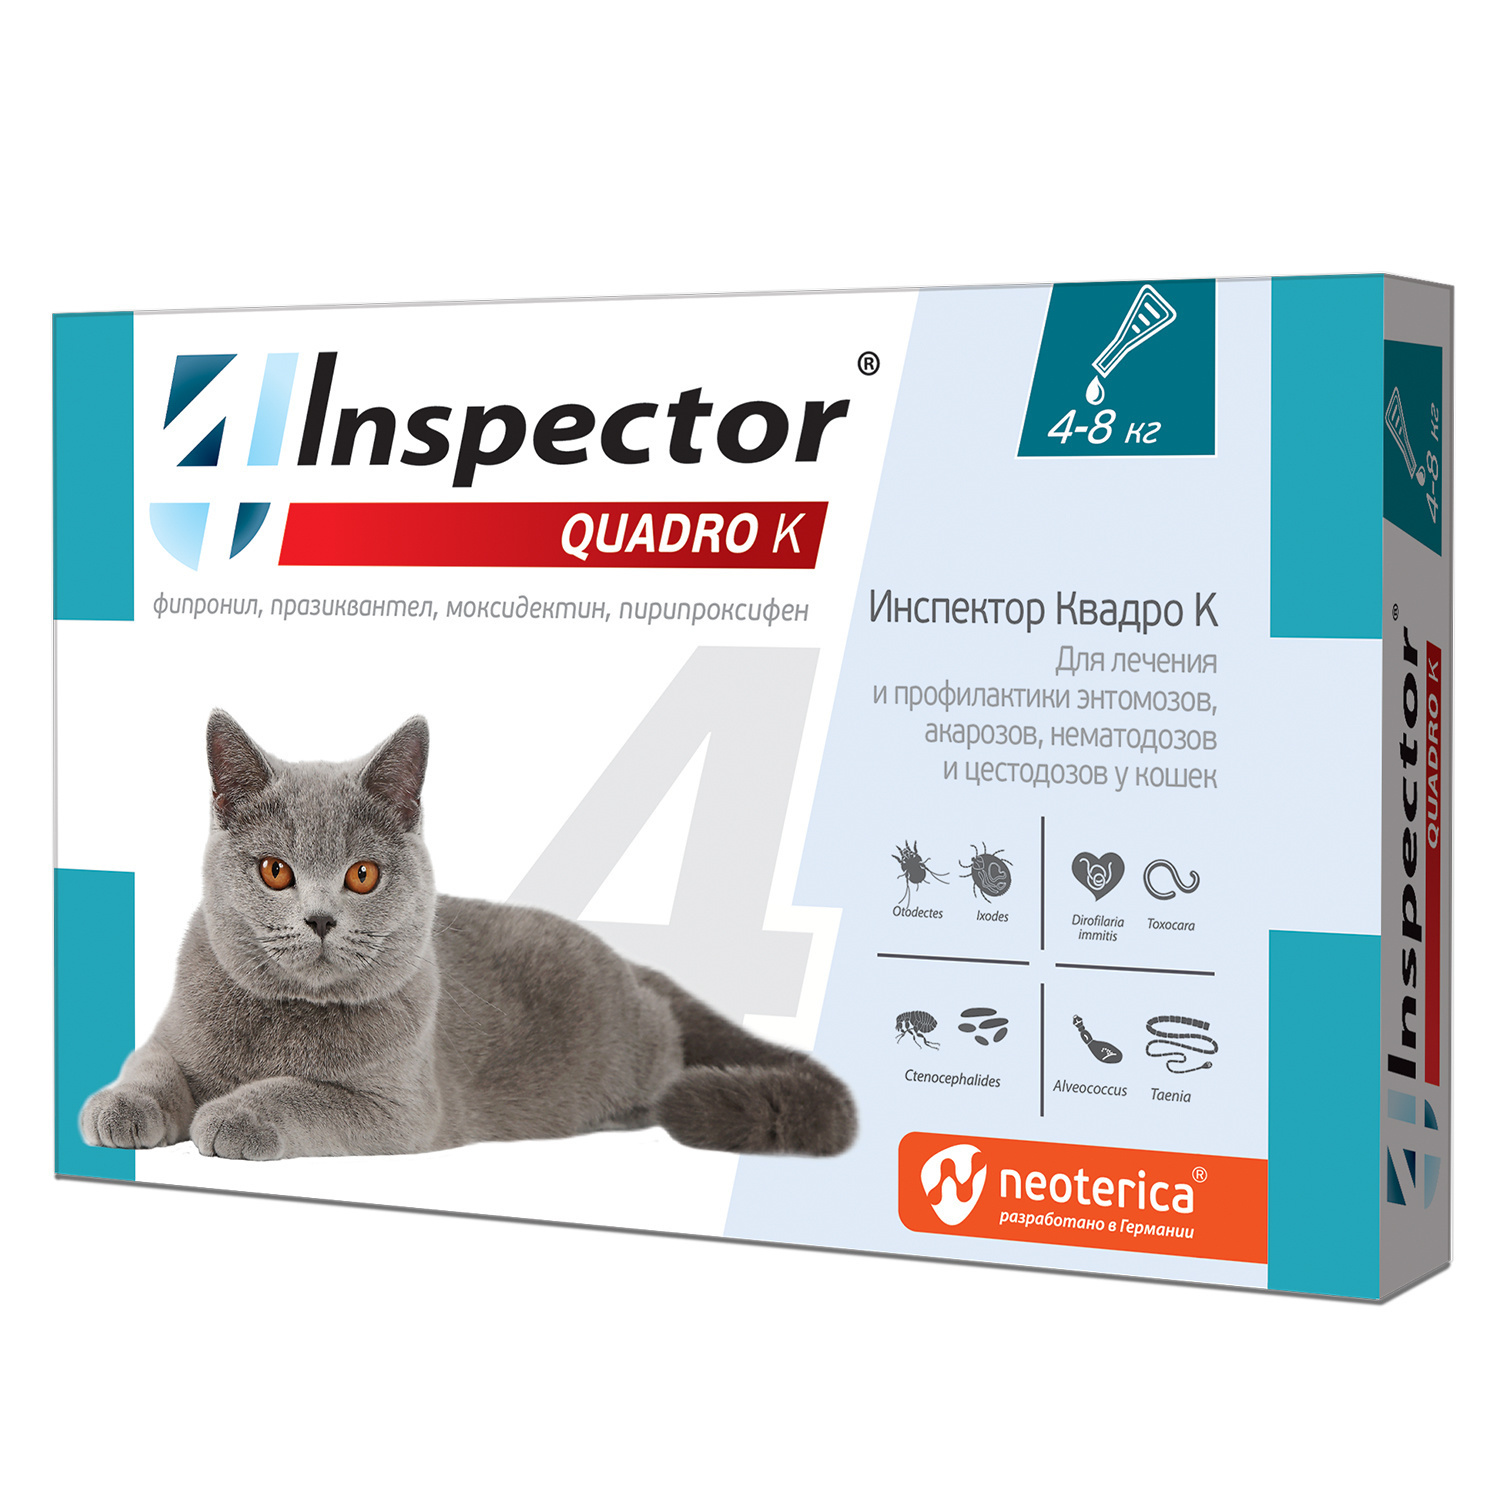 Inspector Inspector quadro капли на холку для кошек 4-8 кг, от глистов, насекомых, клещей (180 г) фото